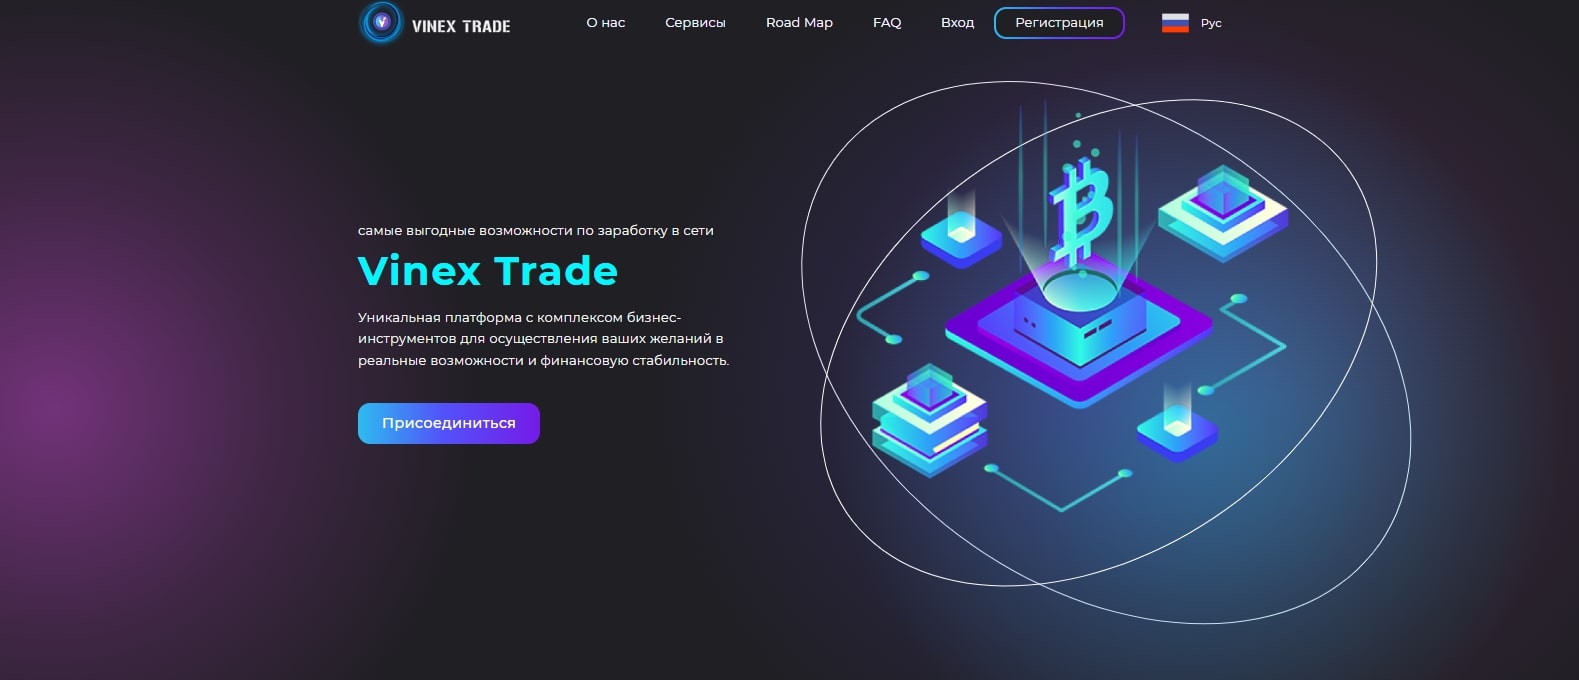 Vinex Trade обзор компании